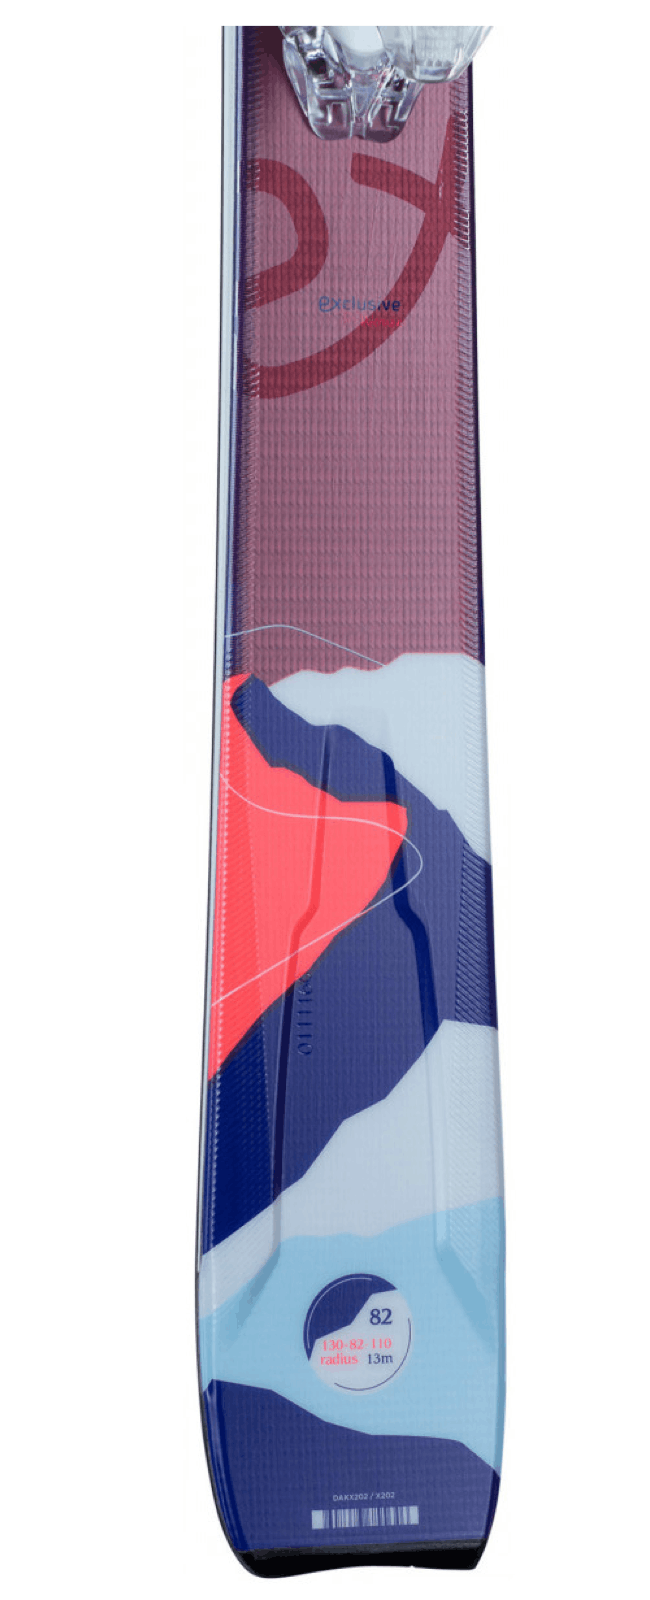 Dynastar E 4x4 5 Skis + Xpress 11 GW Bindings Women's · 2023 · 171cm